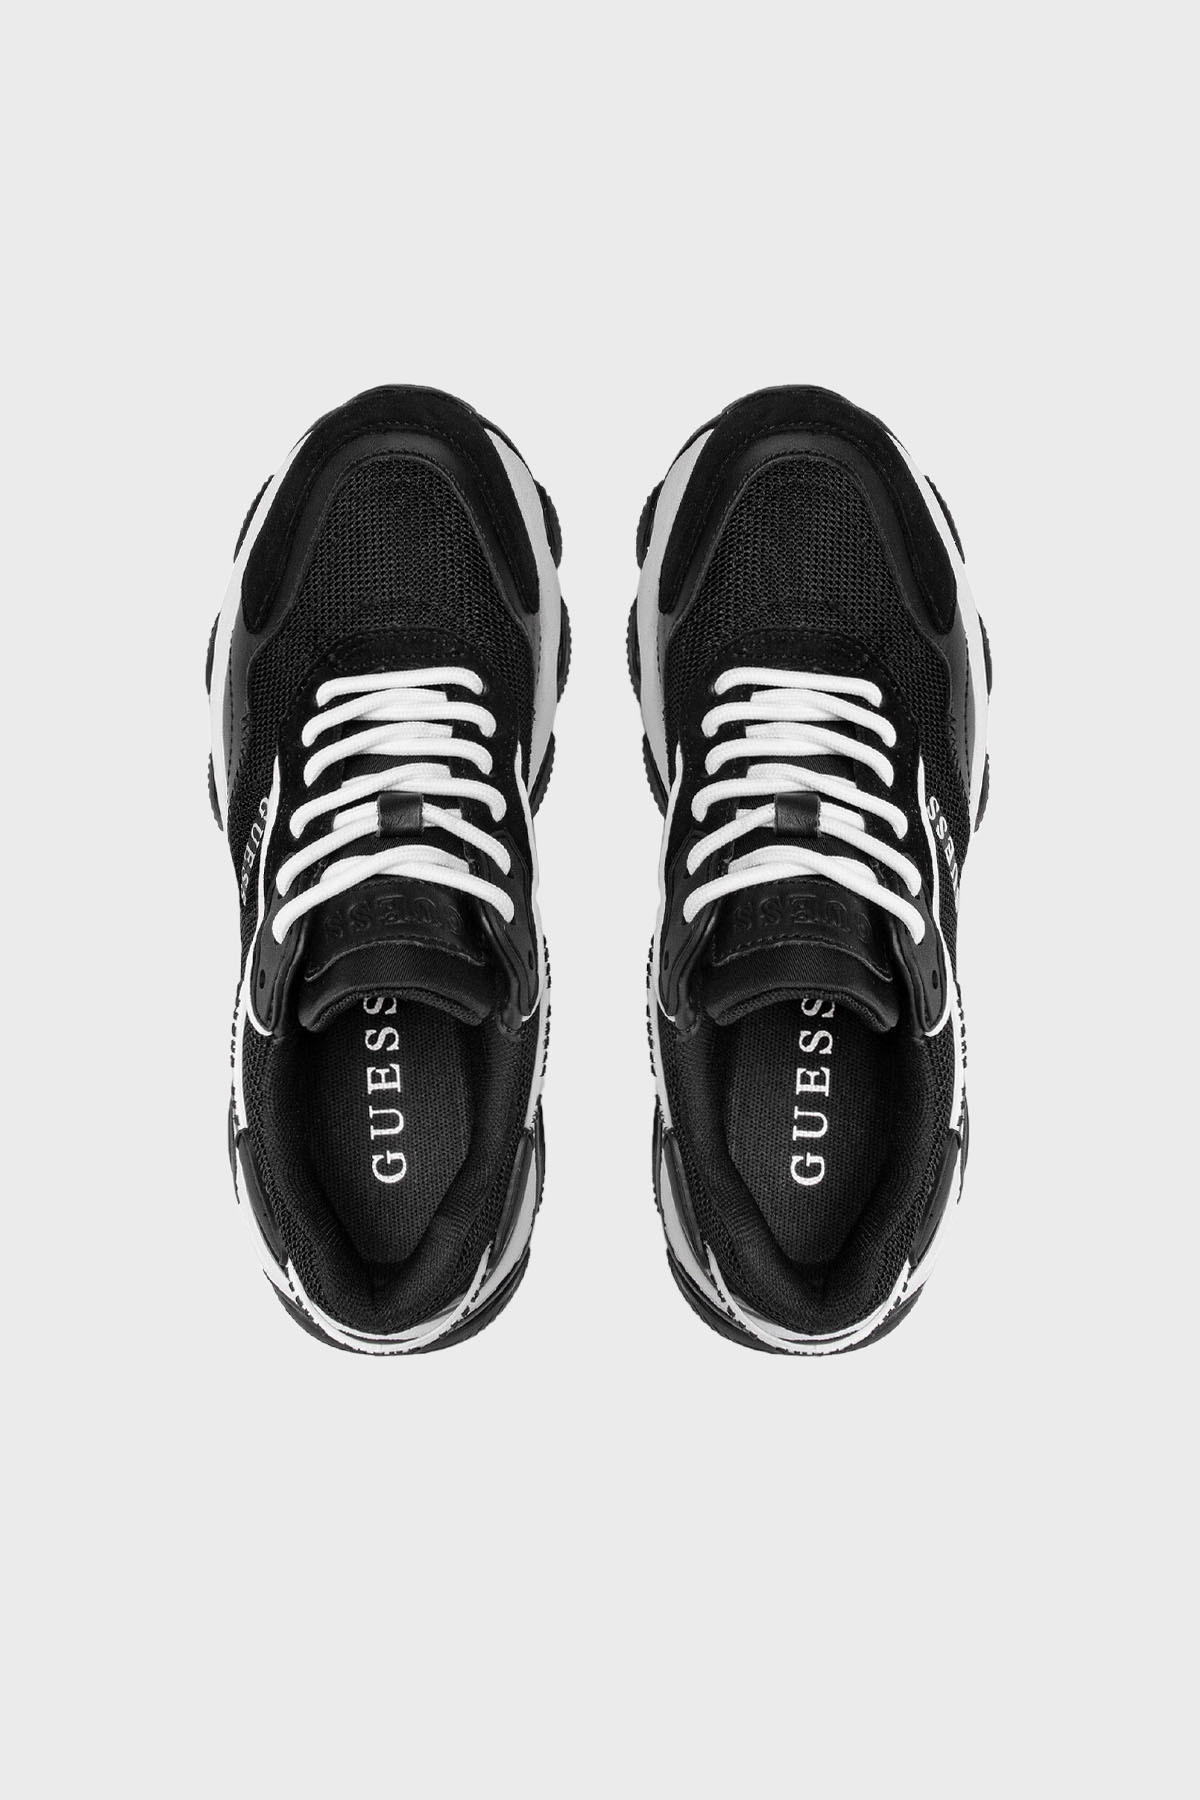 Guess Micola Logolu Kalın Tabanlı Sneaker Bayan Ayakkabı FL7MIC LEA12 BLACK SİYAH